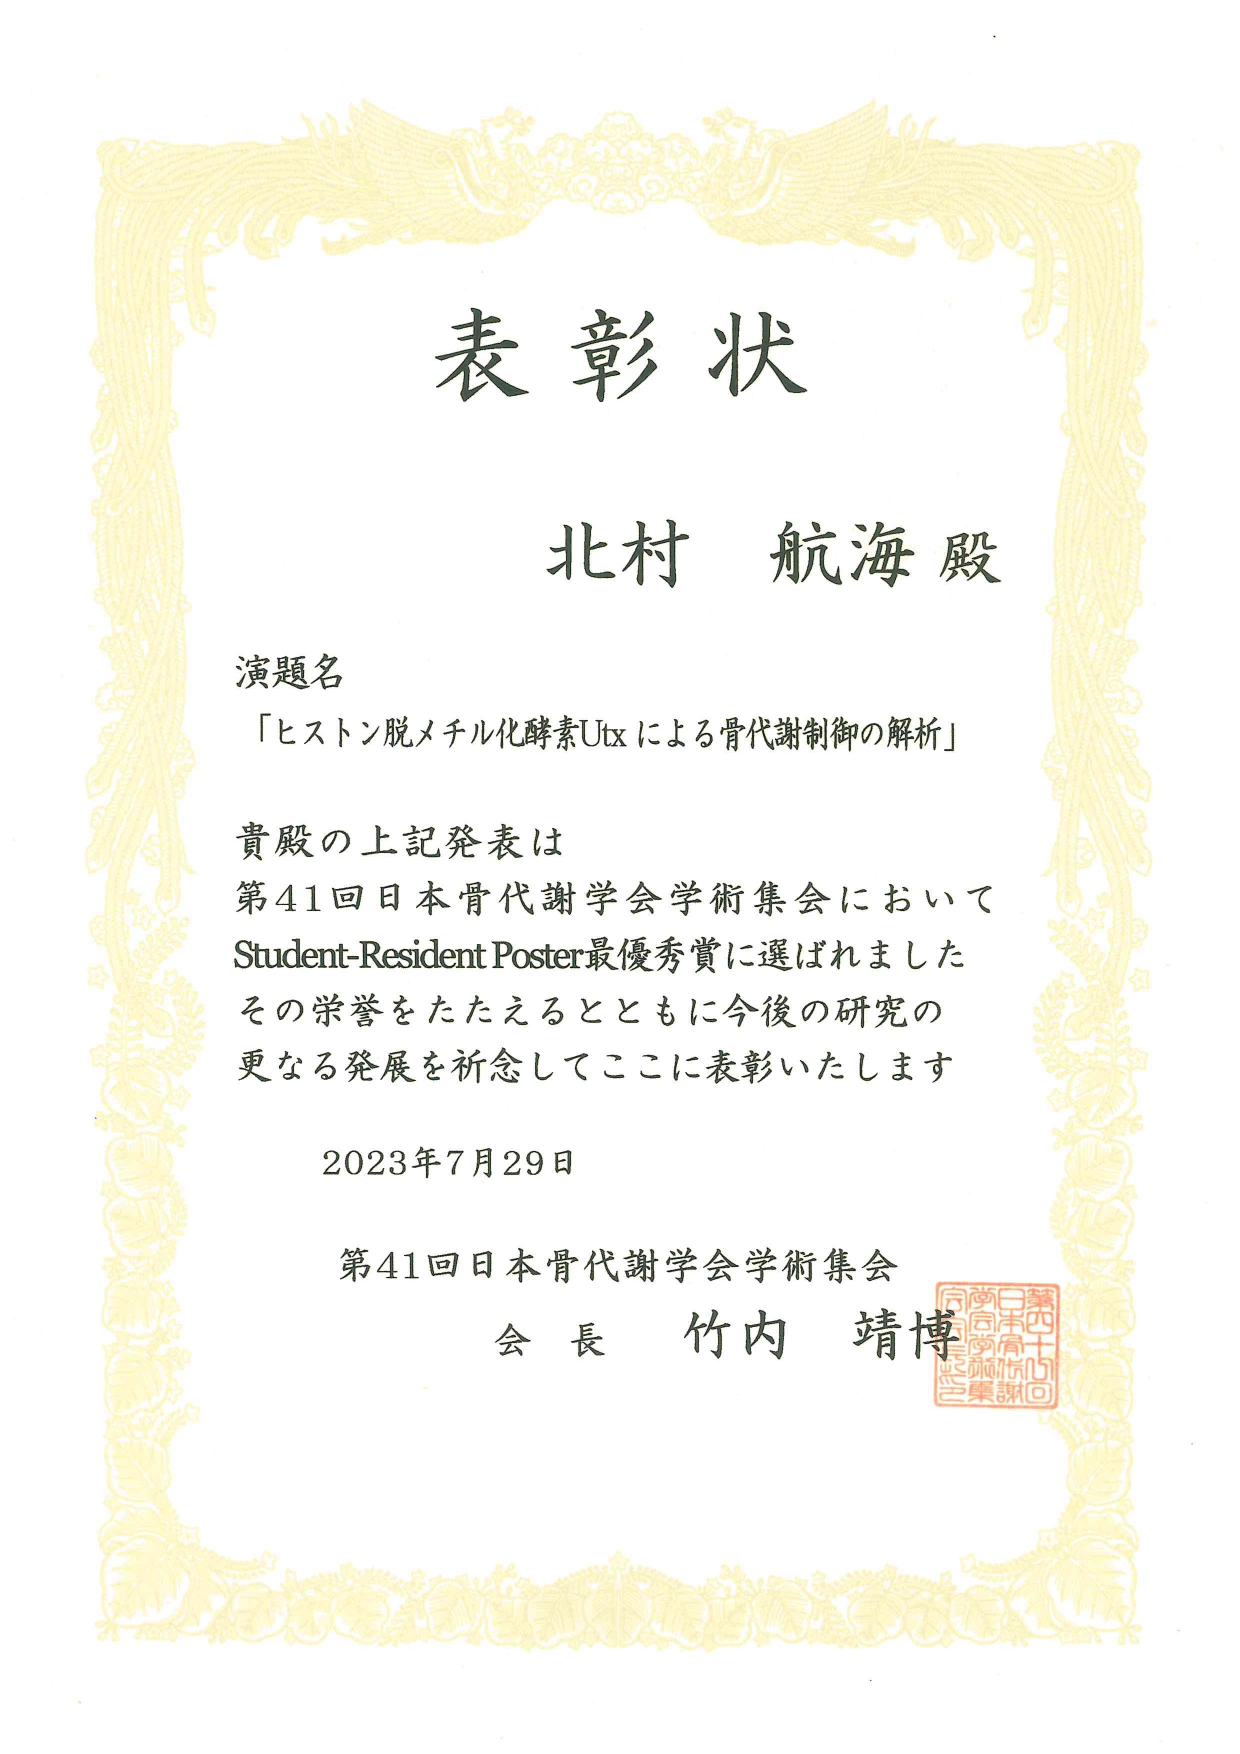 医学部医学科2年生の北村航海さんが「第41回日本骨代謝学会学術集会」において「Student-Resident Poster最優秀賞」を受賞しました